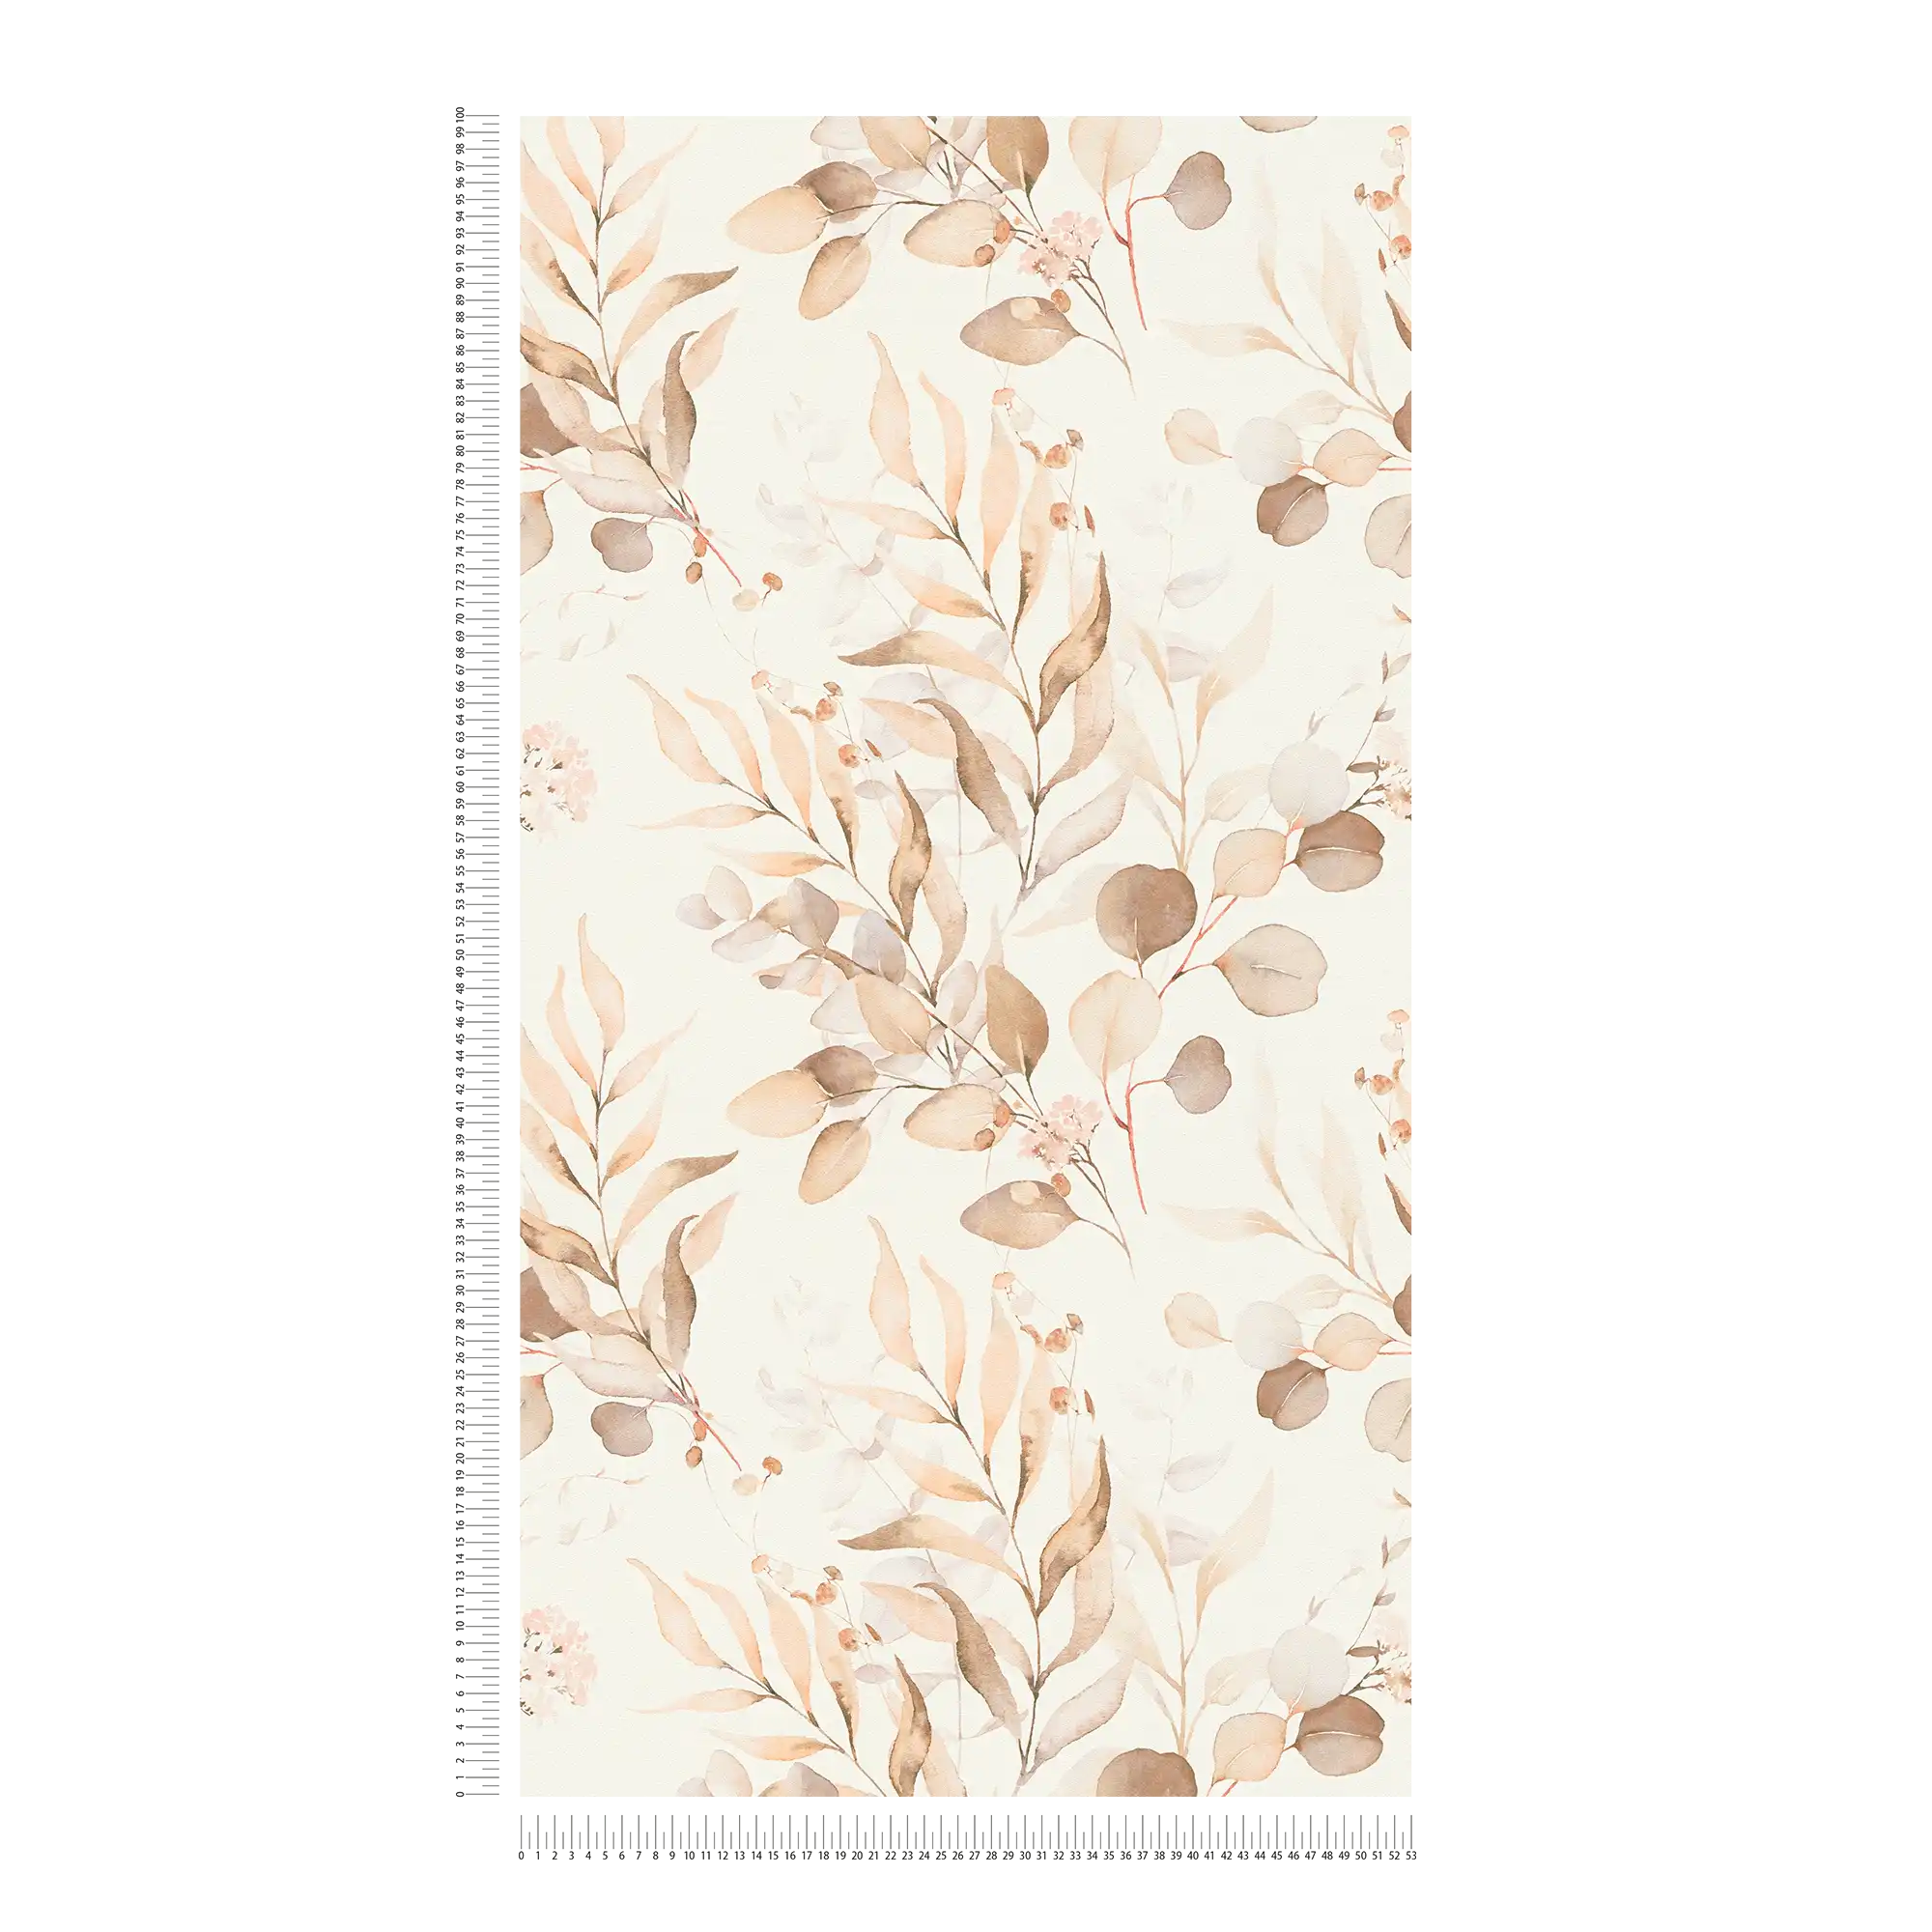             Papel pintado no tejido con motivo de hojas de acuarela en tonos cálidos - crema, beige
        